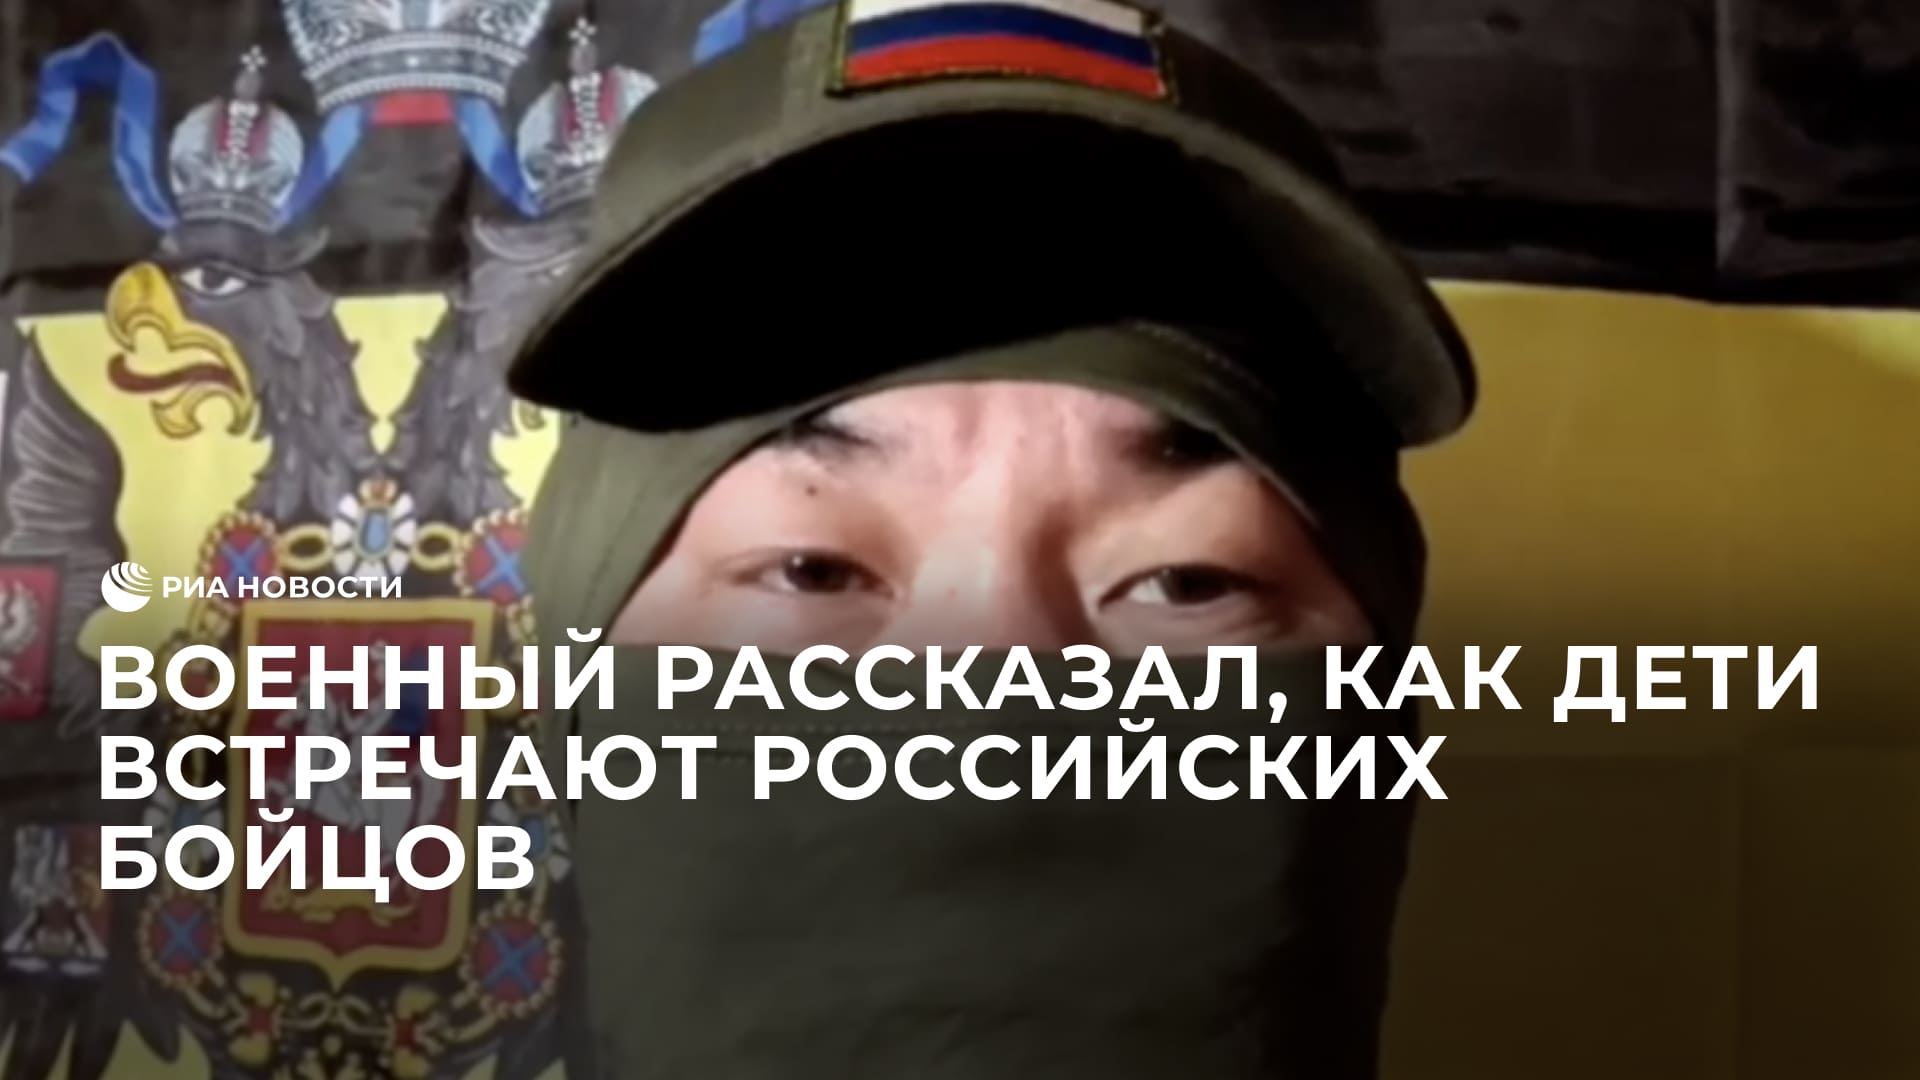 Военный рассказал, как дети встречают российских бойцов